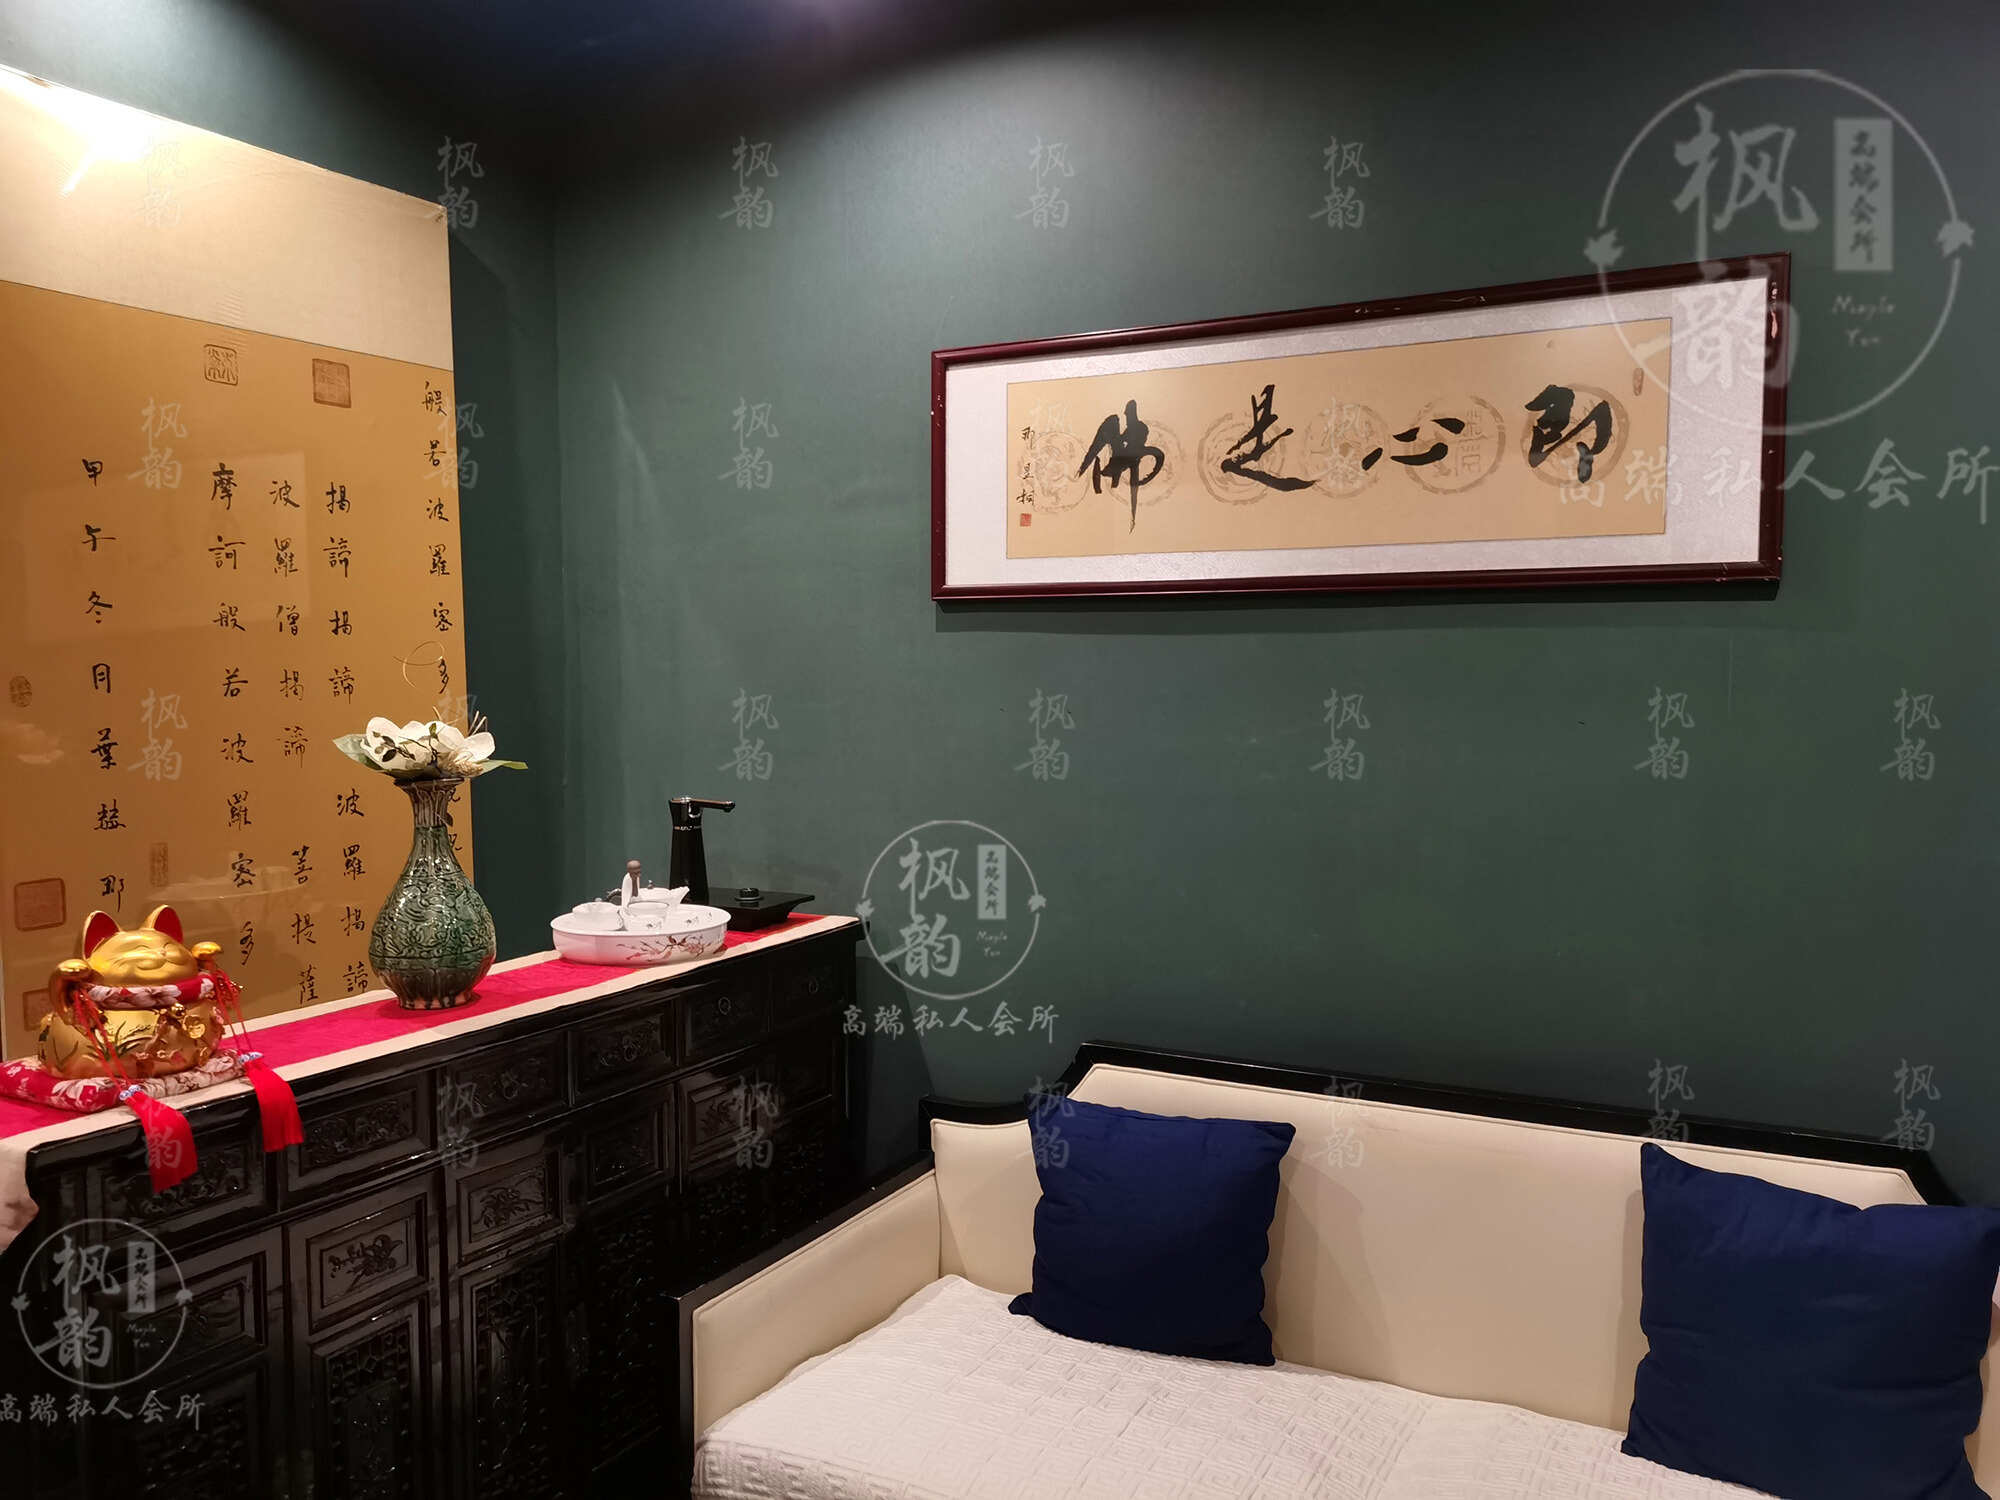 手法也特别专业，广州香度舒体沐浴会馆店值得推荐的好去处，全是满满的诚意